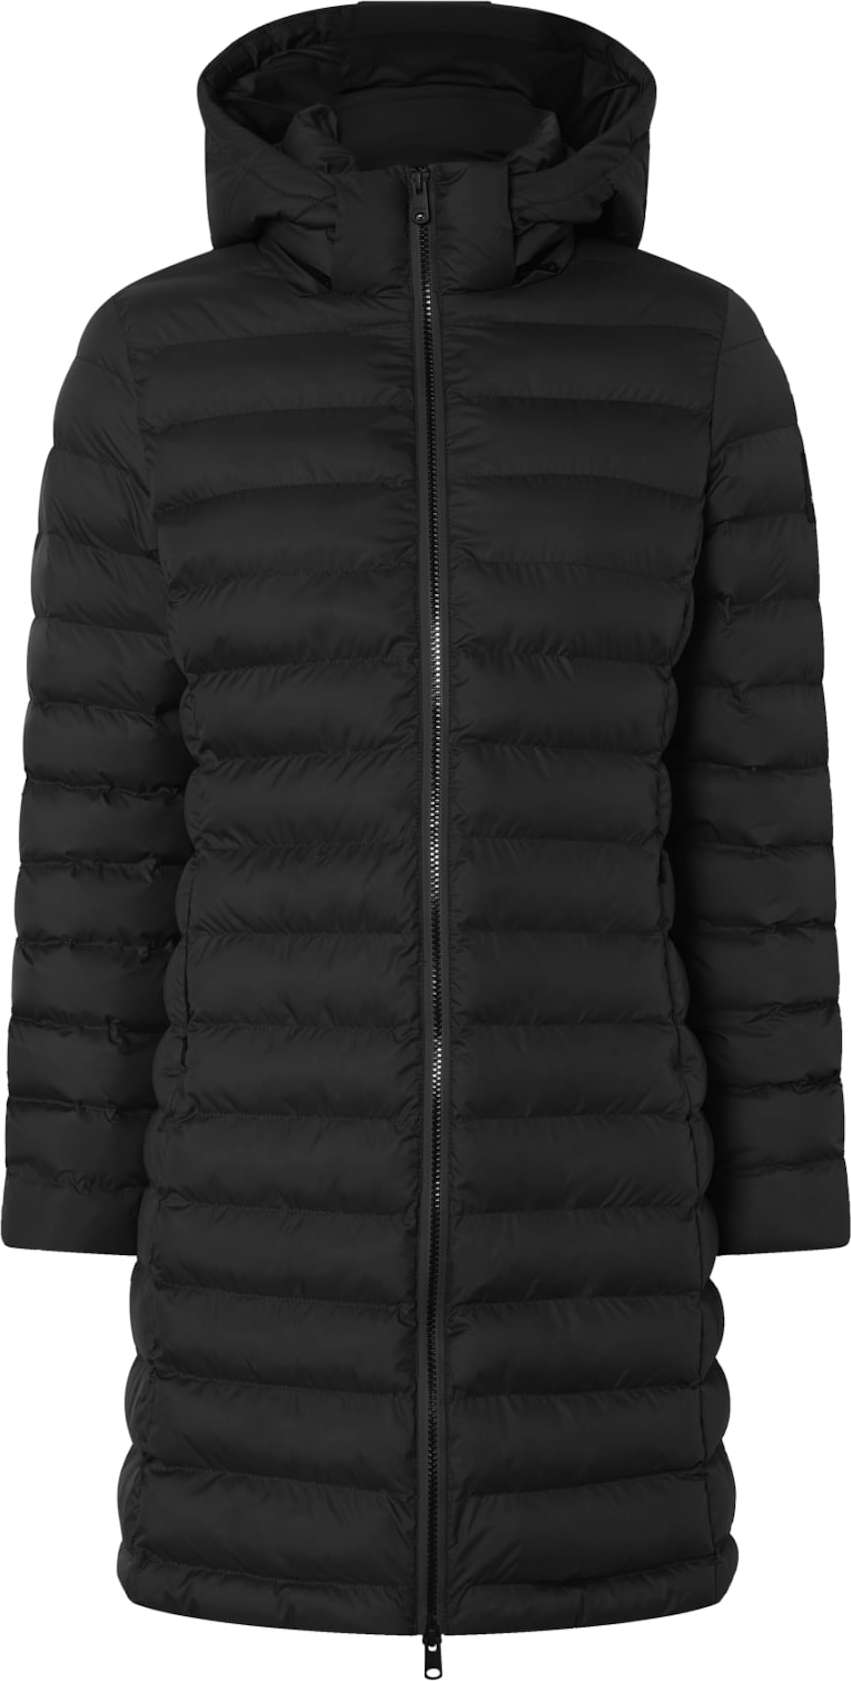 ECOALF Přechodný kabát černá